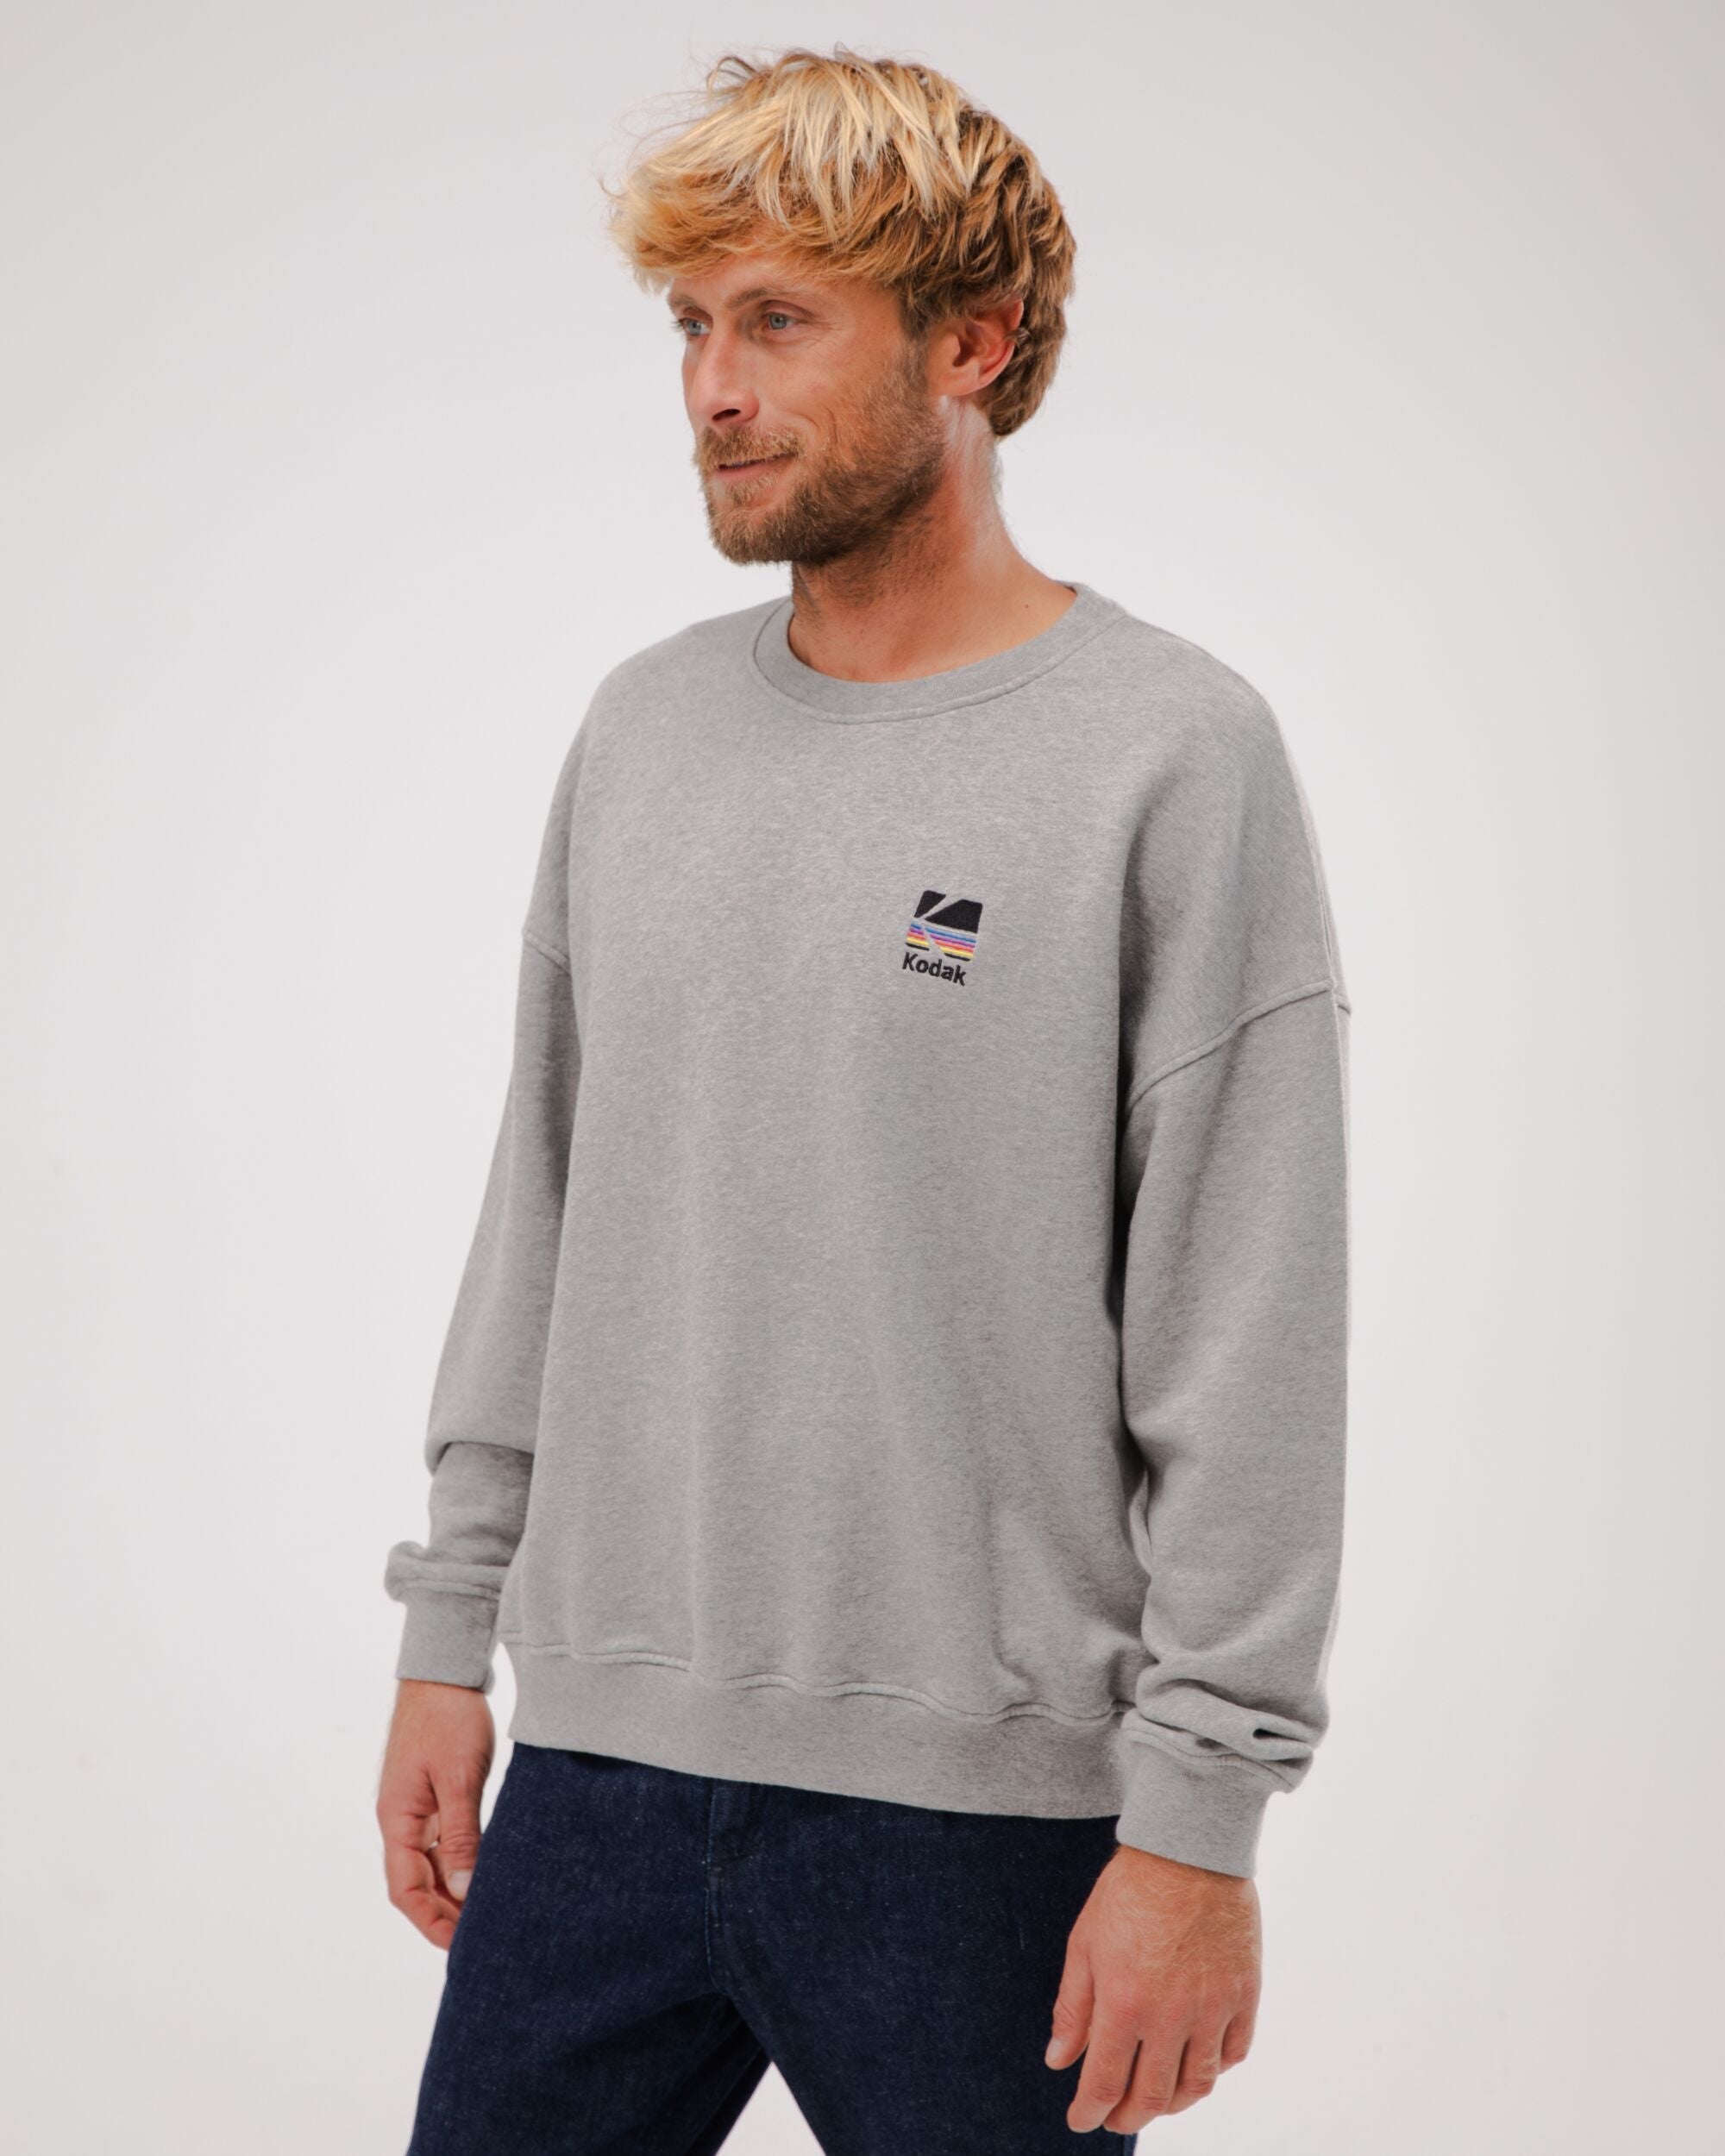 Oversize Sweatshirt Kodak Color in grau-meliert aus Bio Baumwolle von Brava Fabrics